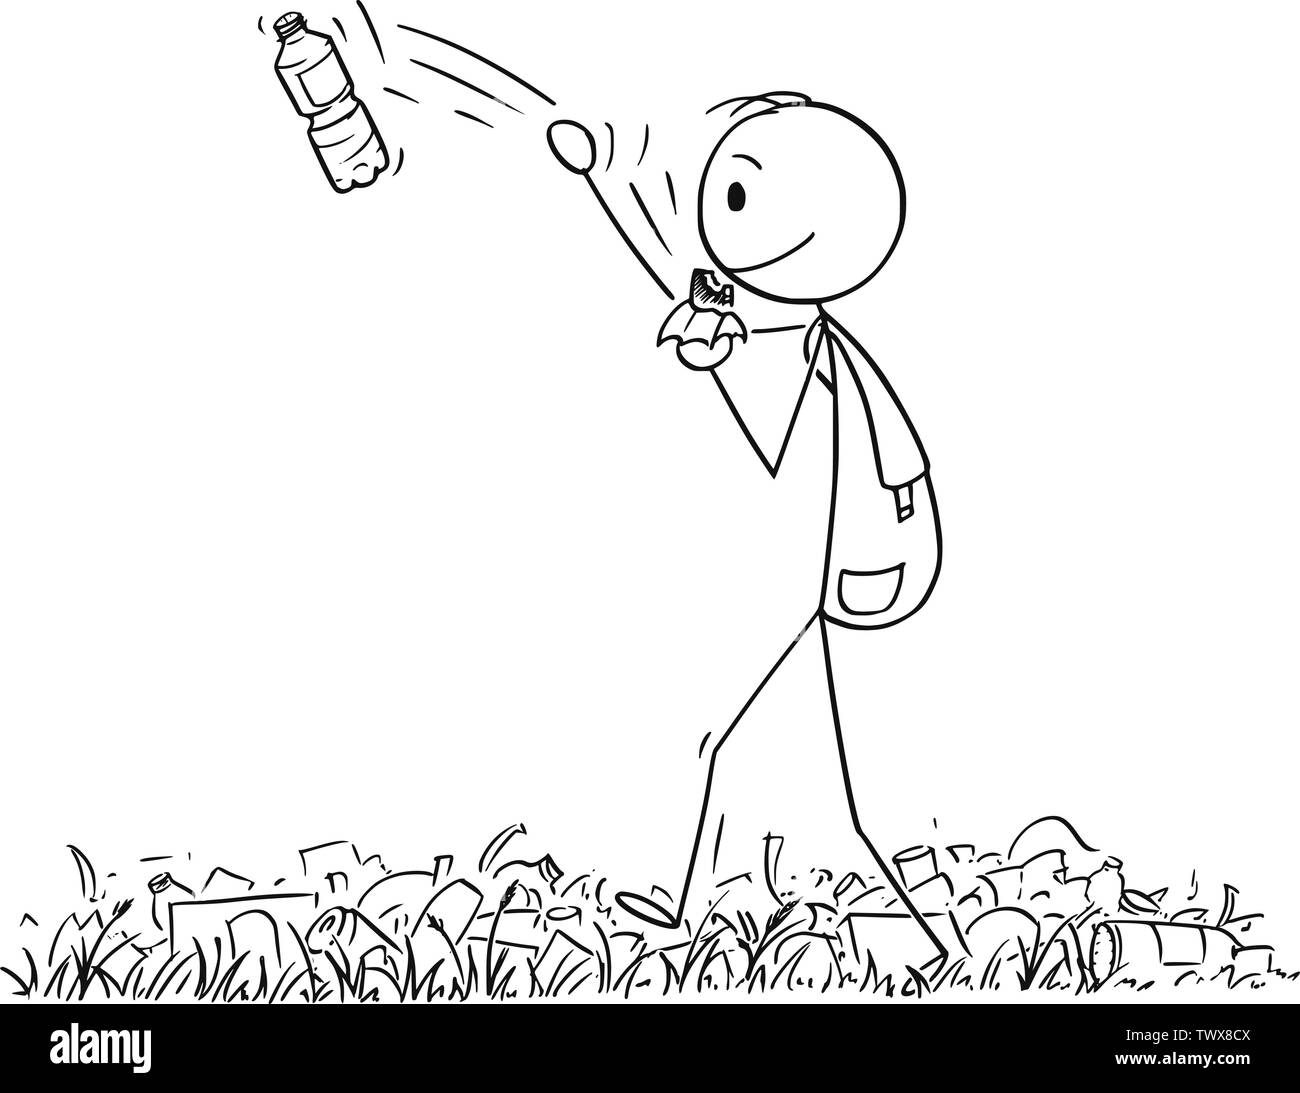 Cartoon vectores stick figura dibujo Ilustración conceptual de caminante o man con mochila trekking o caminata en la naturaleza llena de residuos y basura, y arrojar una botella plástica de distancia. Ilustración del Vector